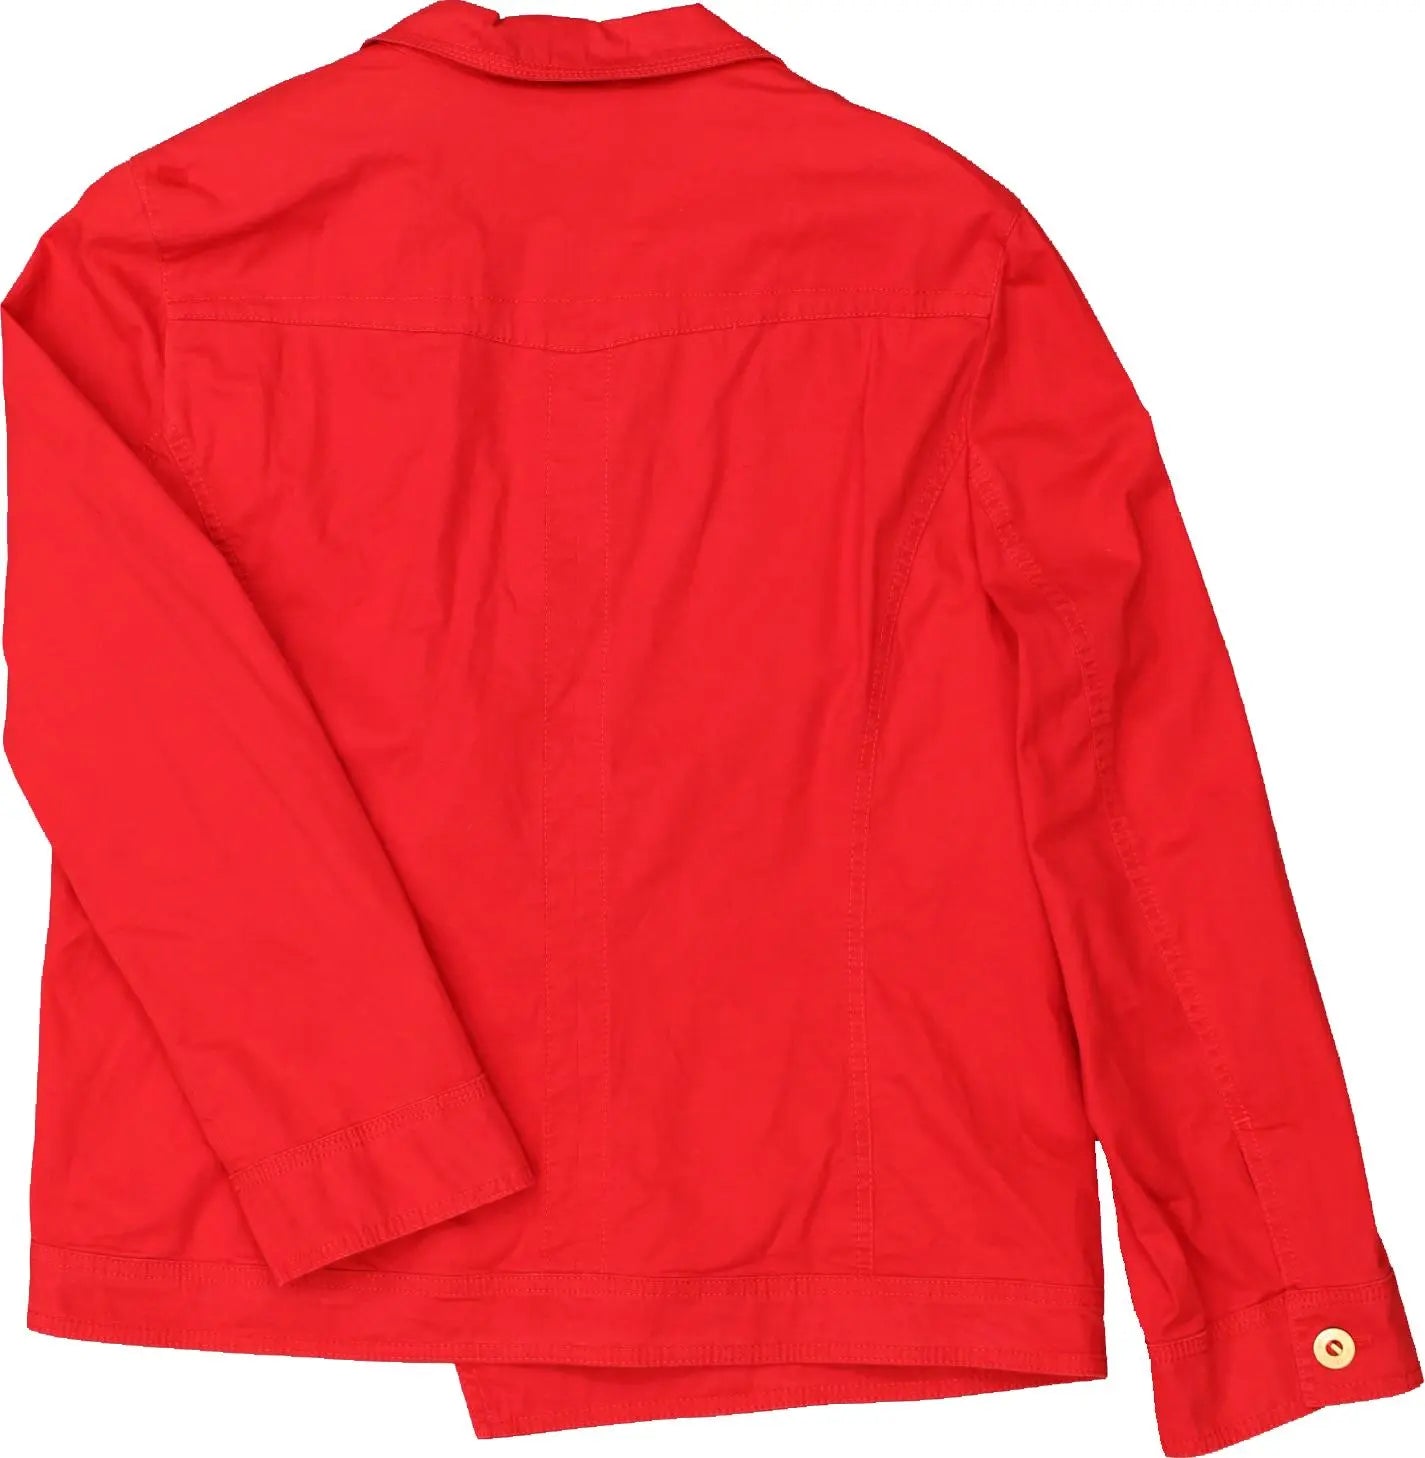 BASLER - Red Jacket by Basler- ThriftTale.com - Vintage and second handclothing